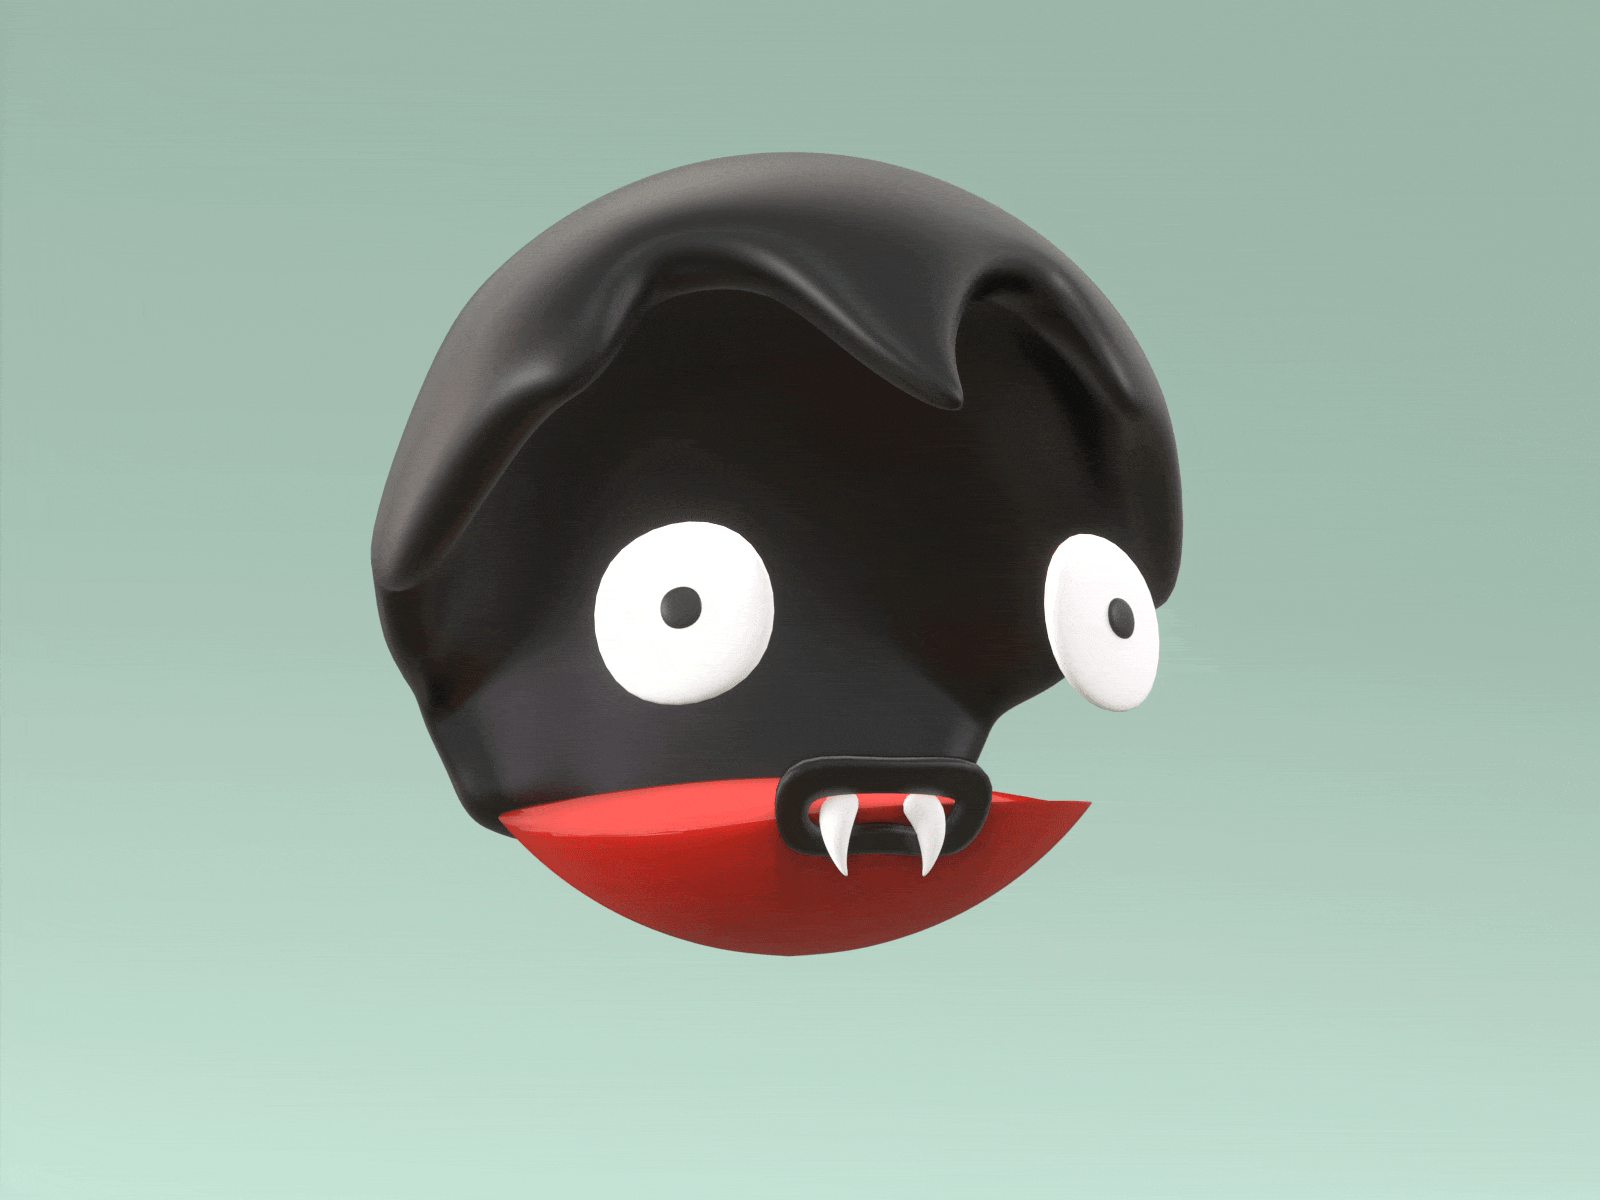 Refill Please! 3d animation blender character cute horror illustration loop october vampire